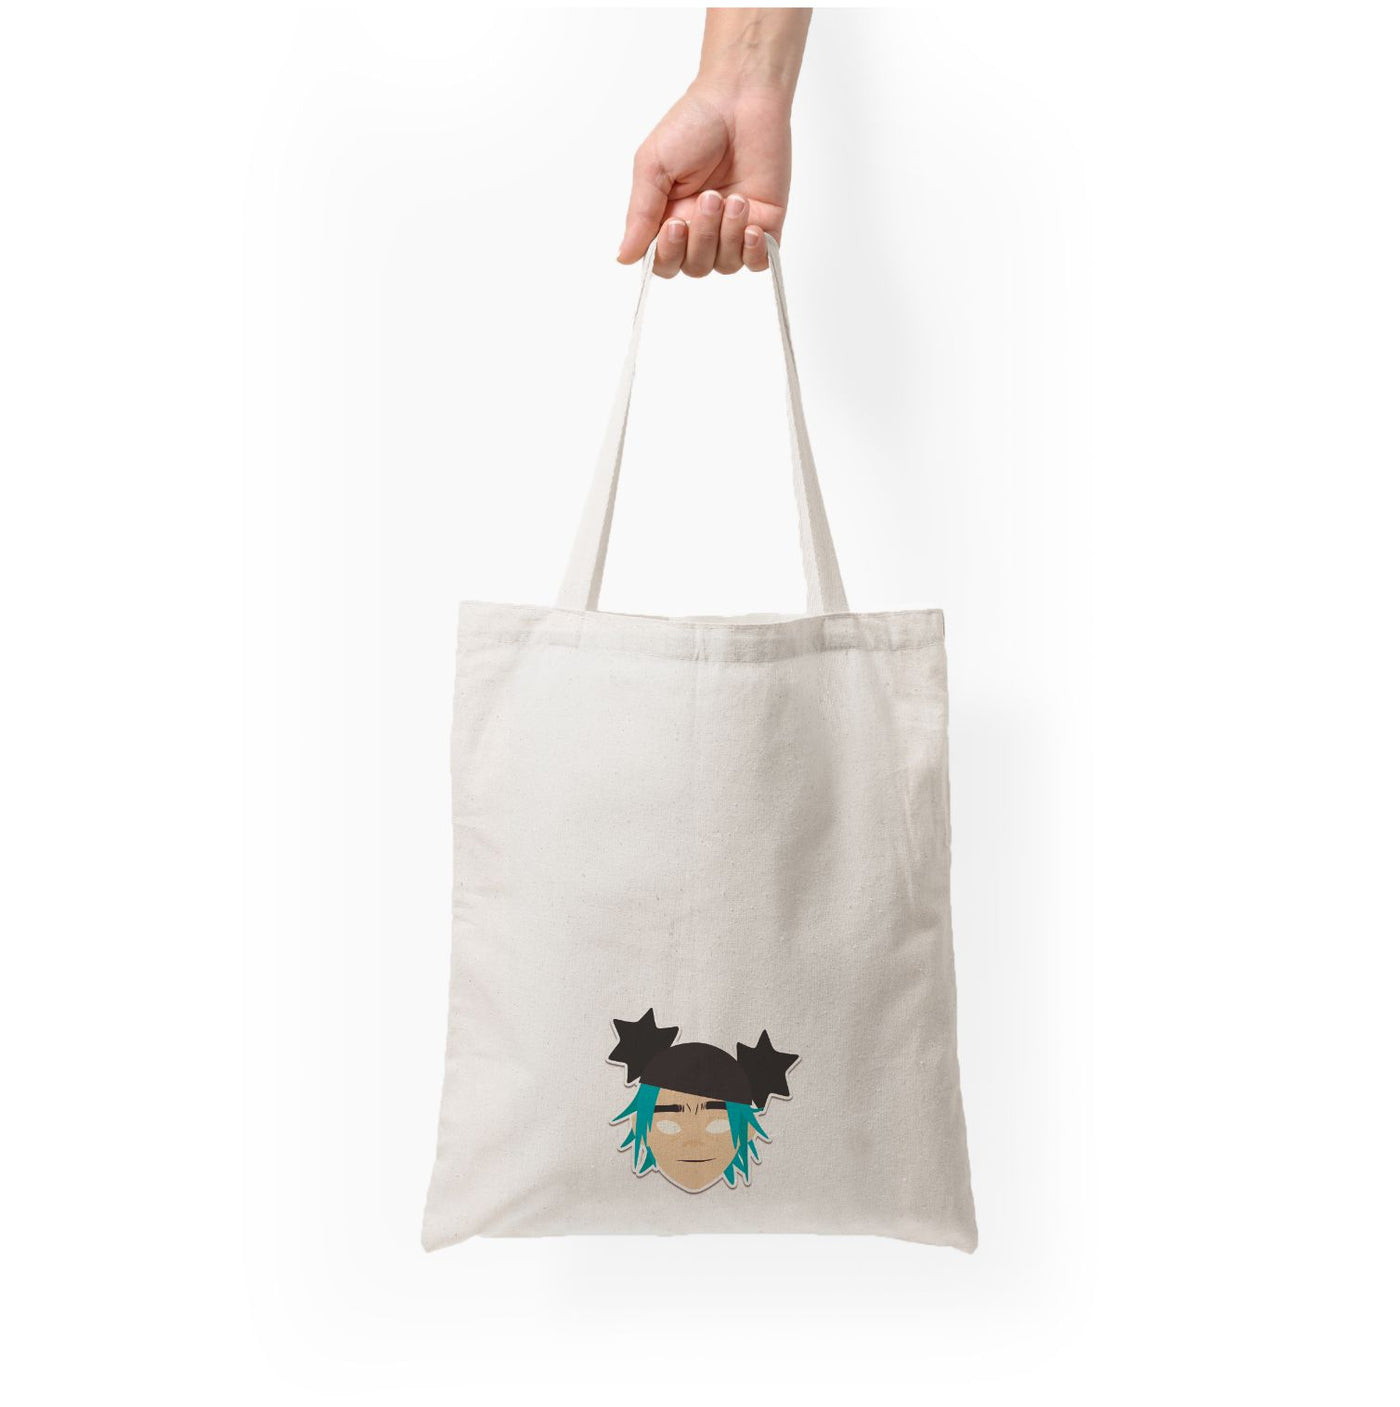 2d - Gorillaz Tote Bag